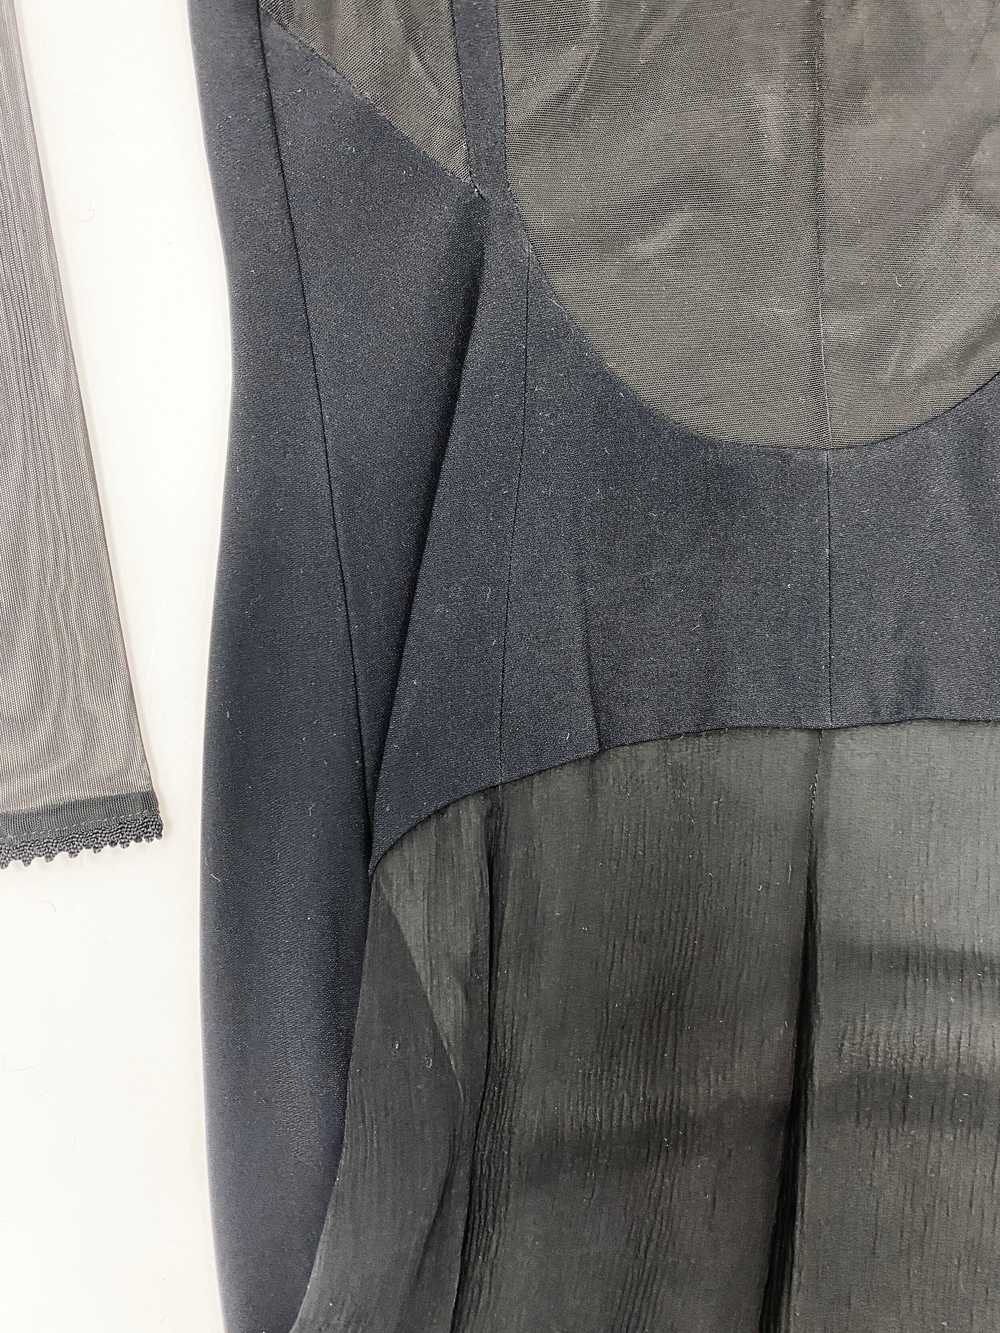 Gianfranco Ferre 90s sheer chiffon dress - image 10